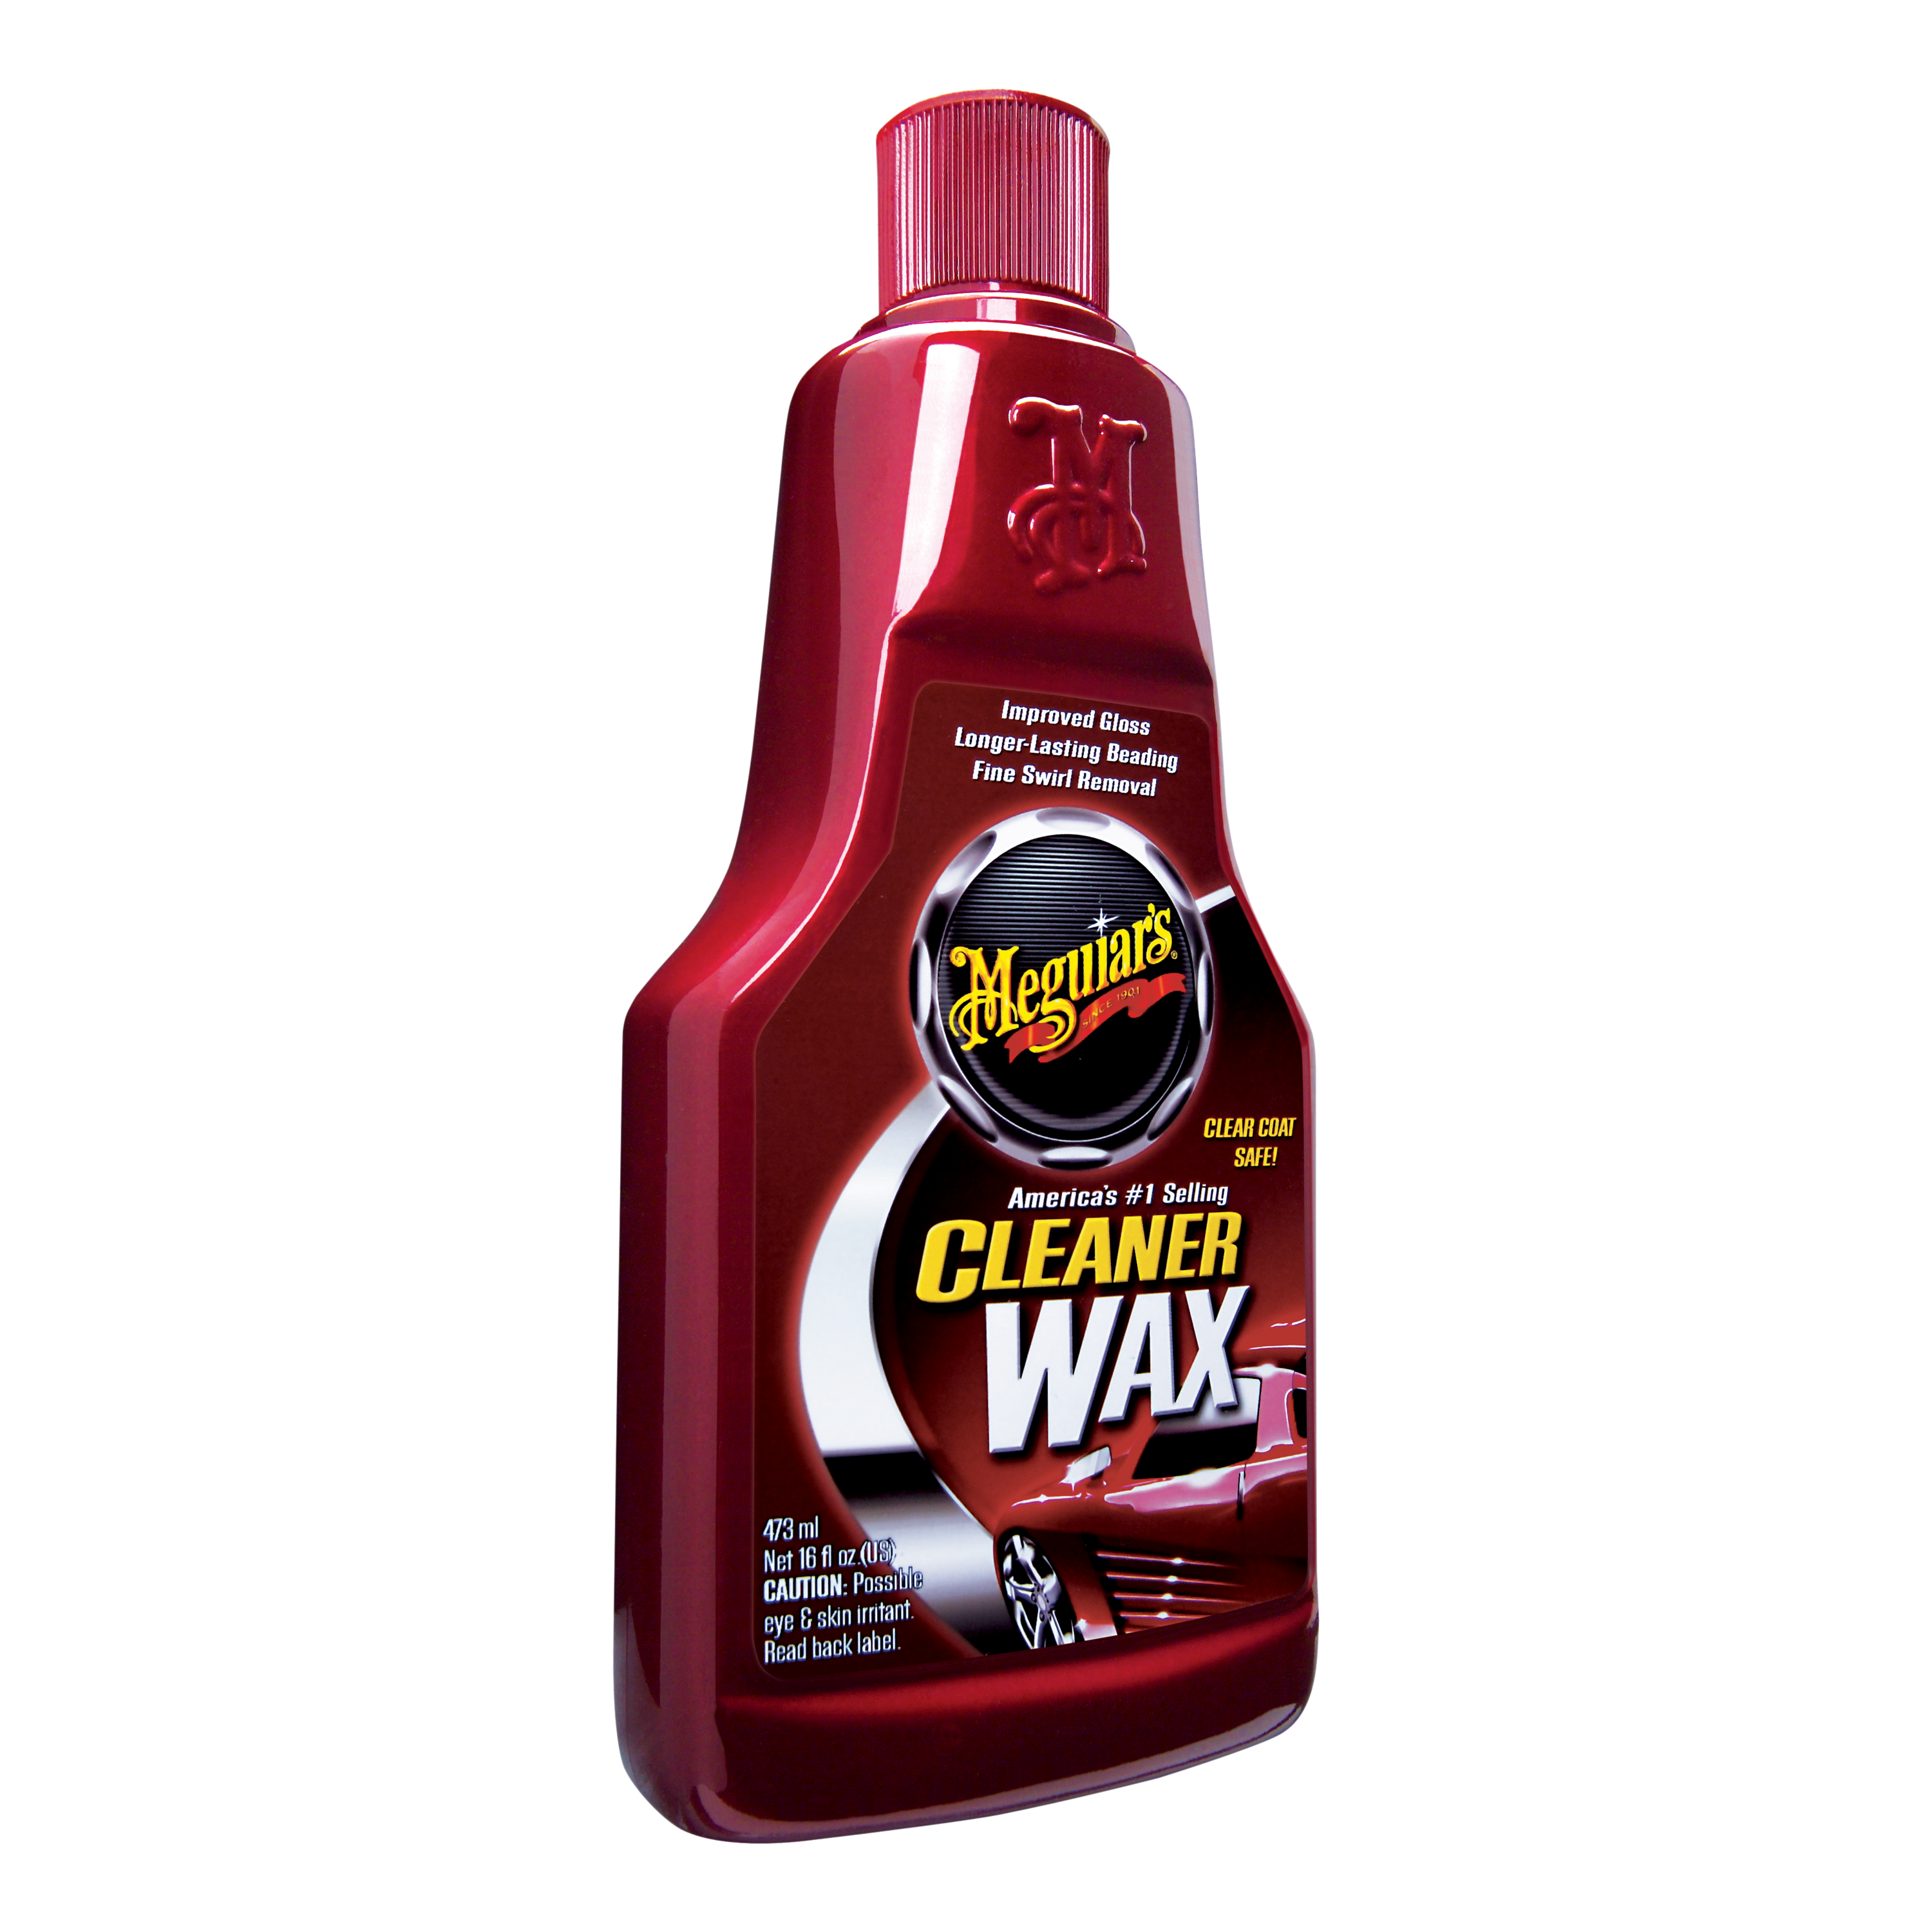 Meguiar's® Cleaner Wax, A1216, 16 oz., Liquid